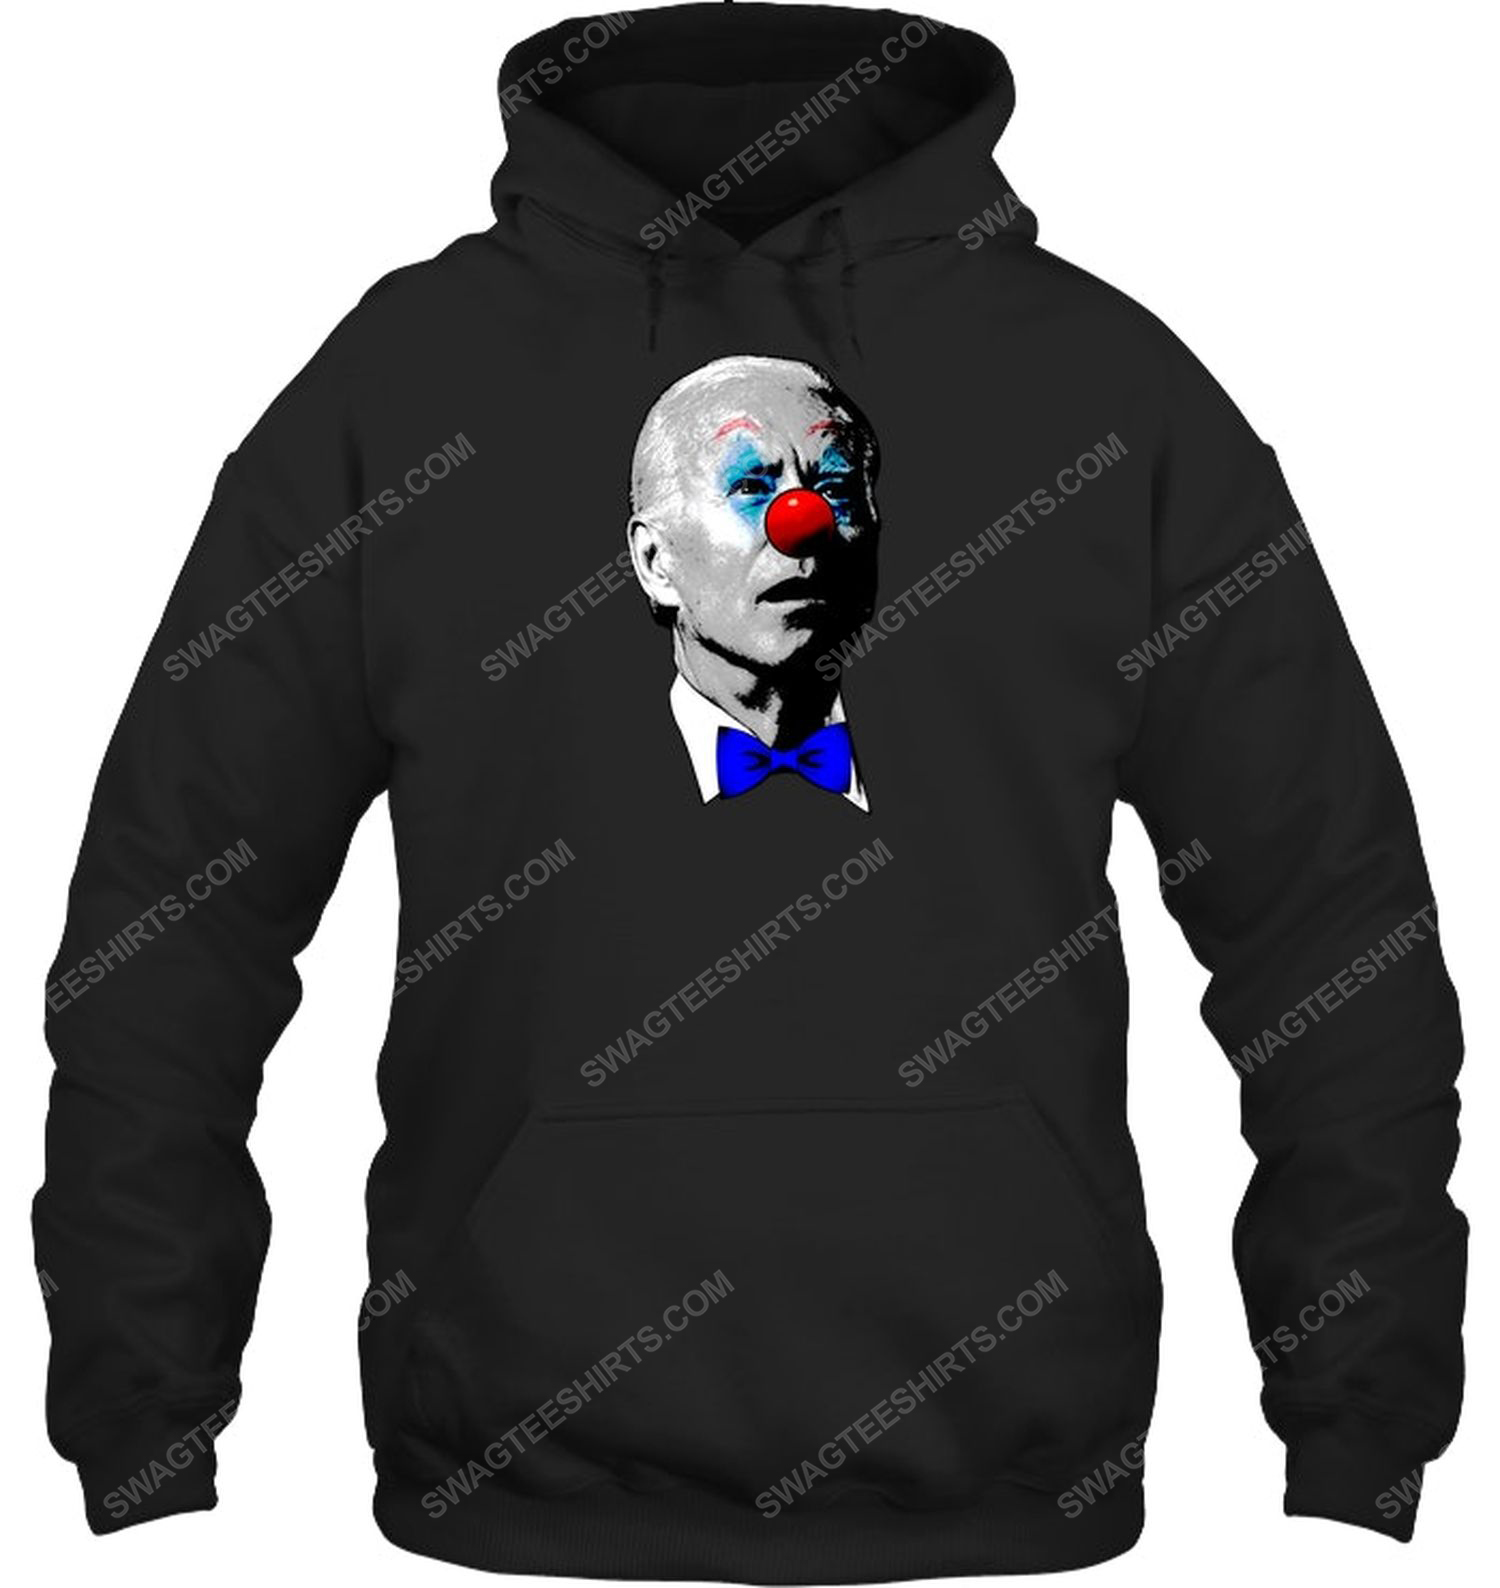 Joe biden clown face political hoodie